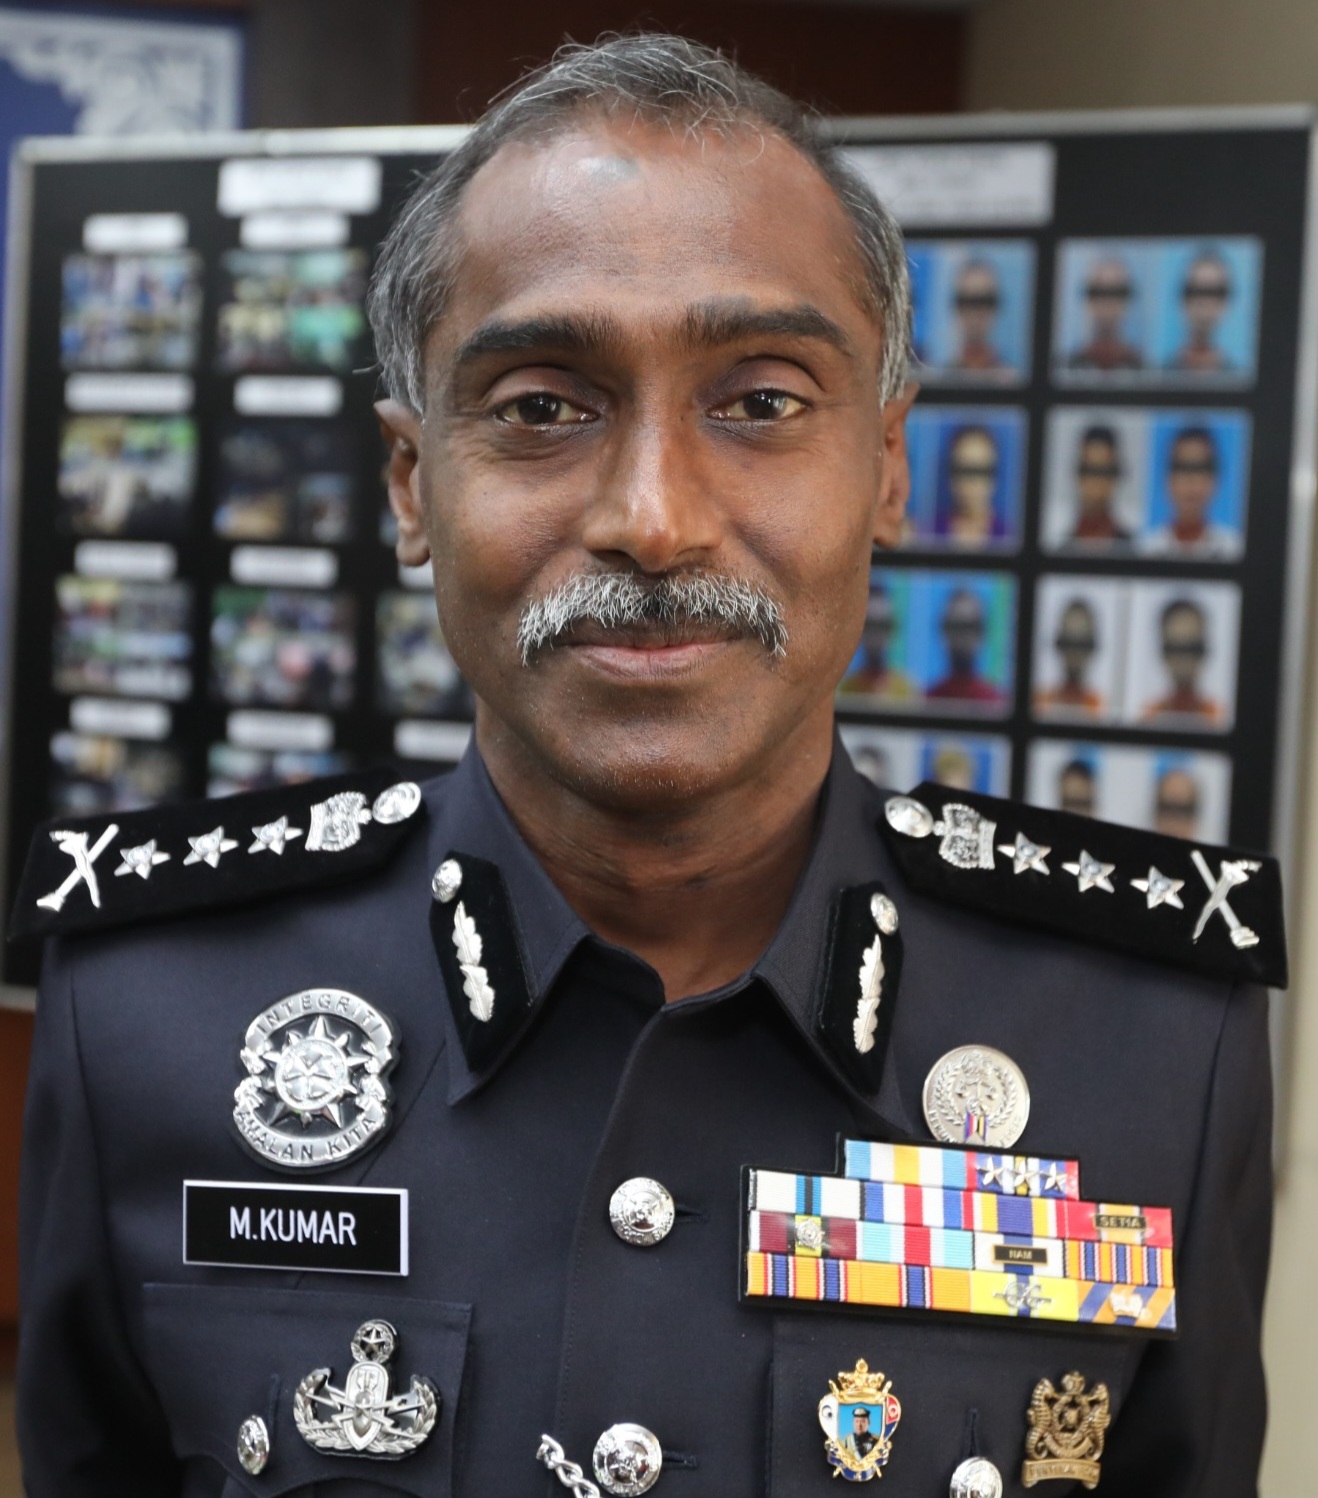 Lapan termasuk Inspektor ditahan bantu siasatan kes pemerasan RM35,000 -  Utusan Malaysia